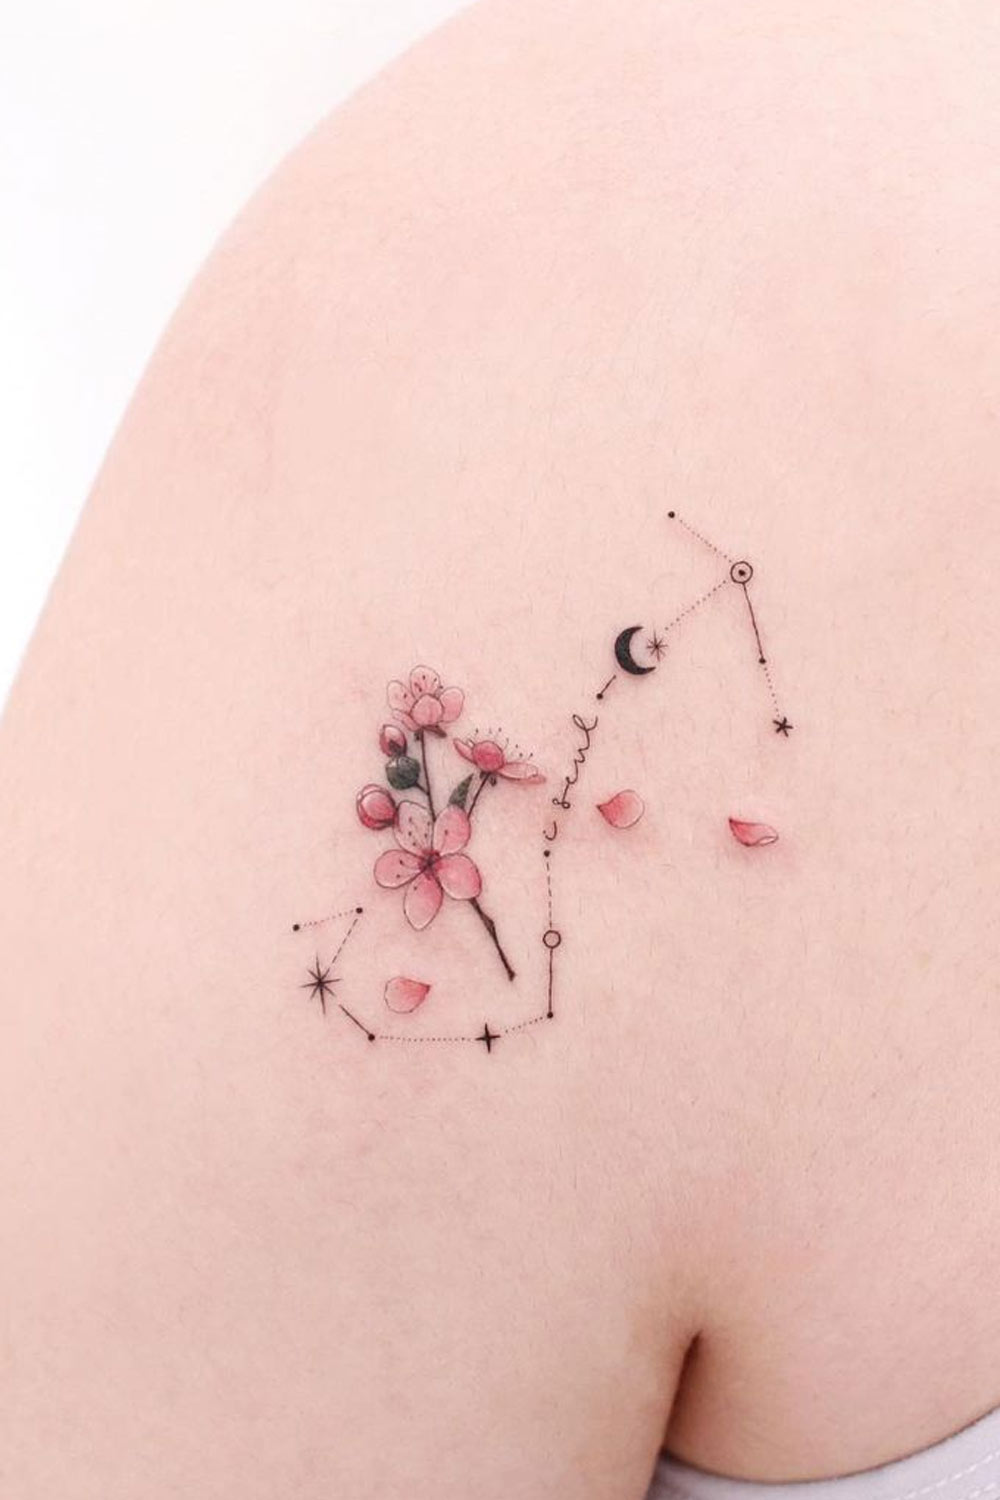 Scorpio Constellation Tattoo Design